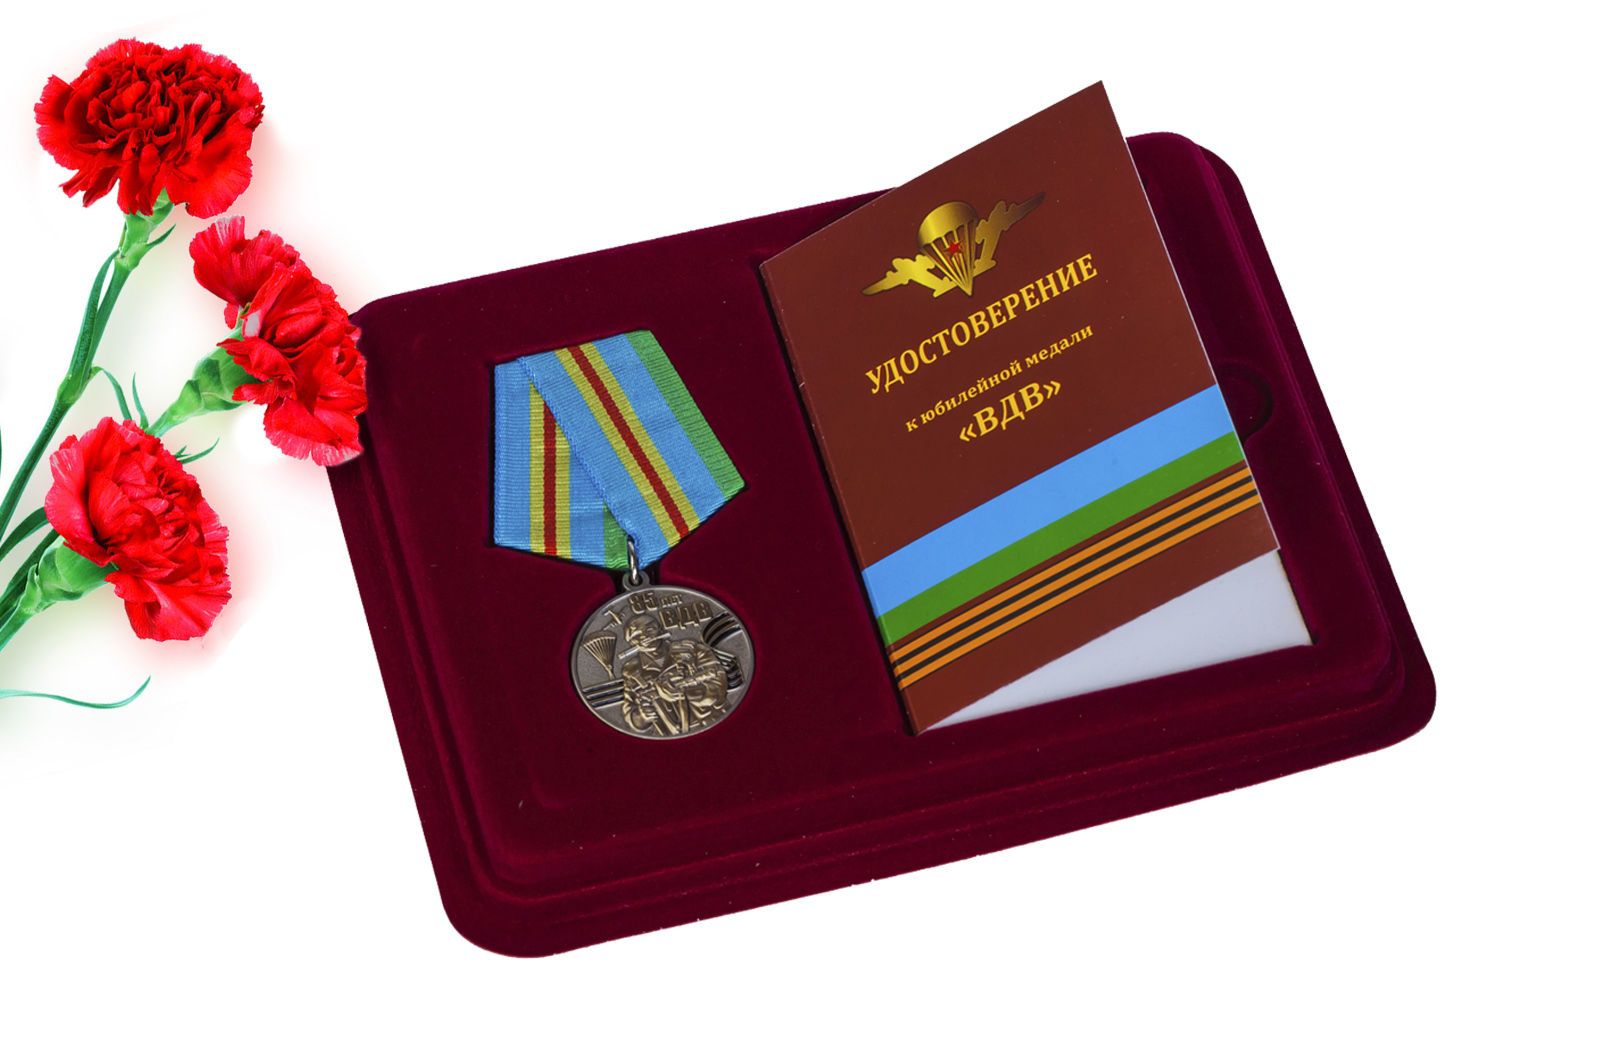 Юбилейная медаль ВДВ 85 лет купить в подарок